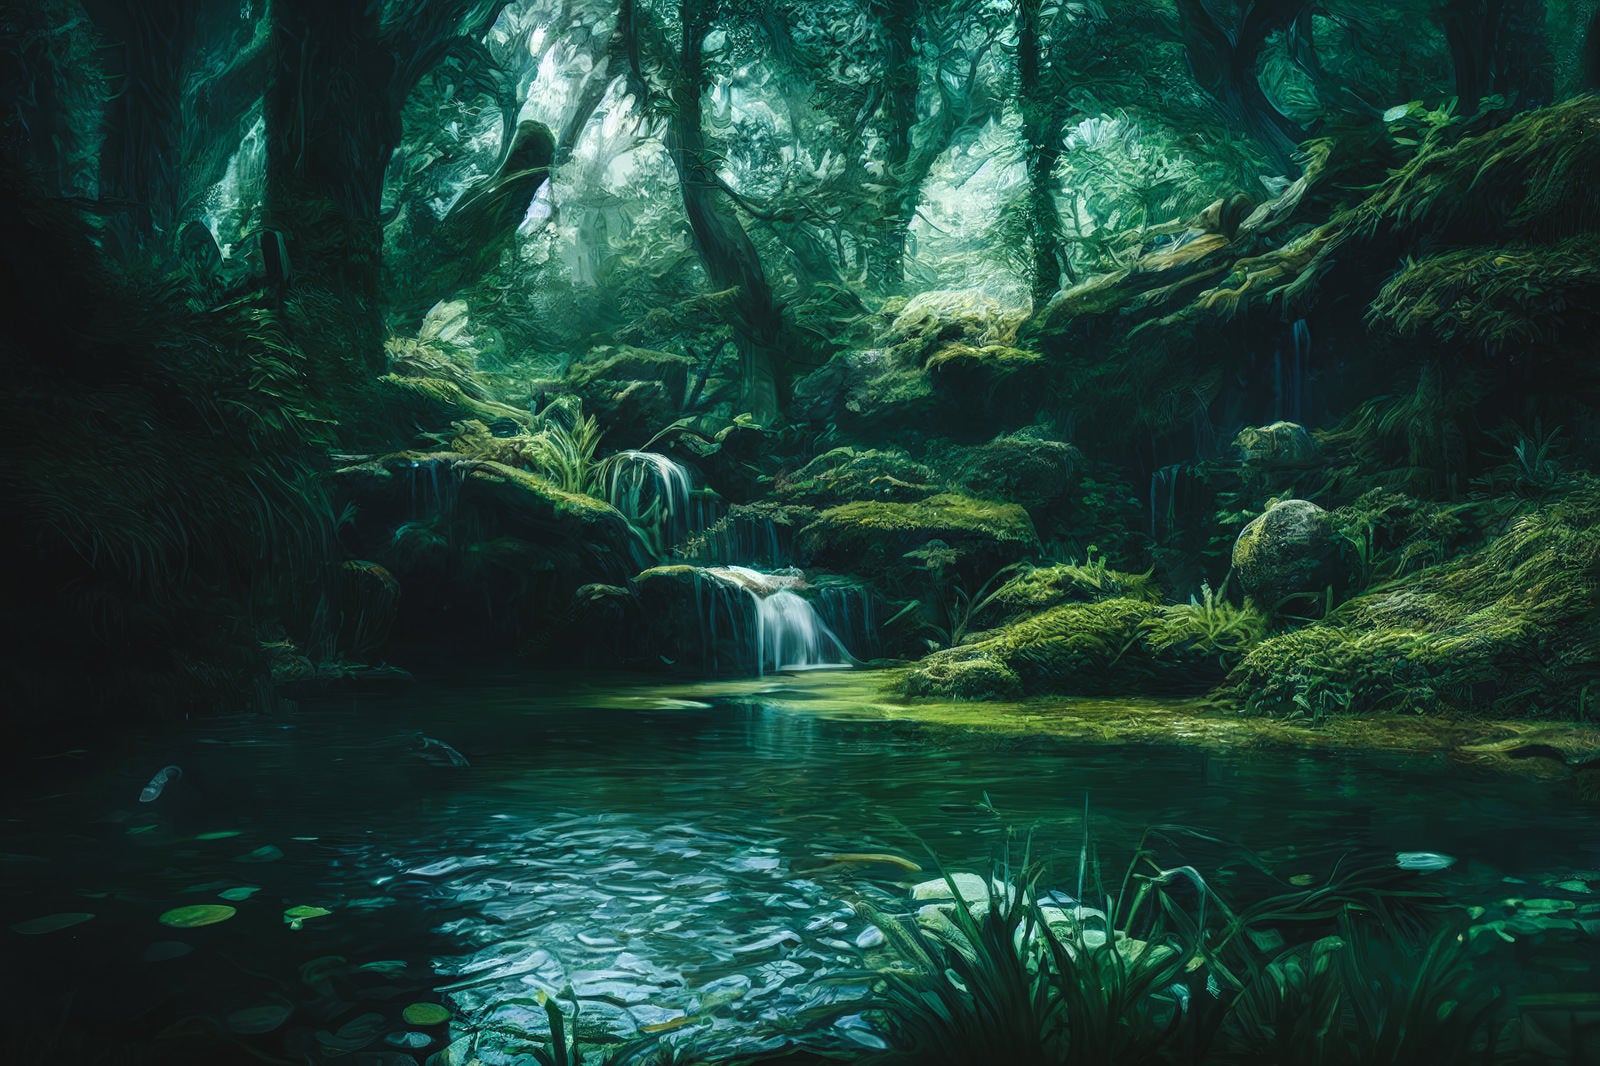 「深い森にできた池」の写真